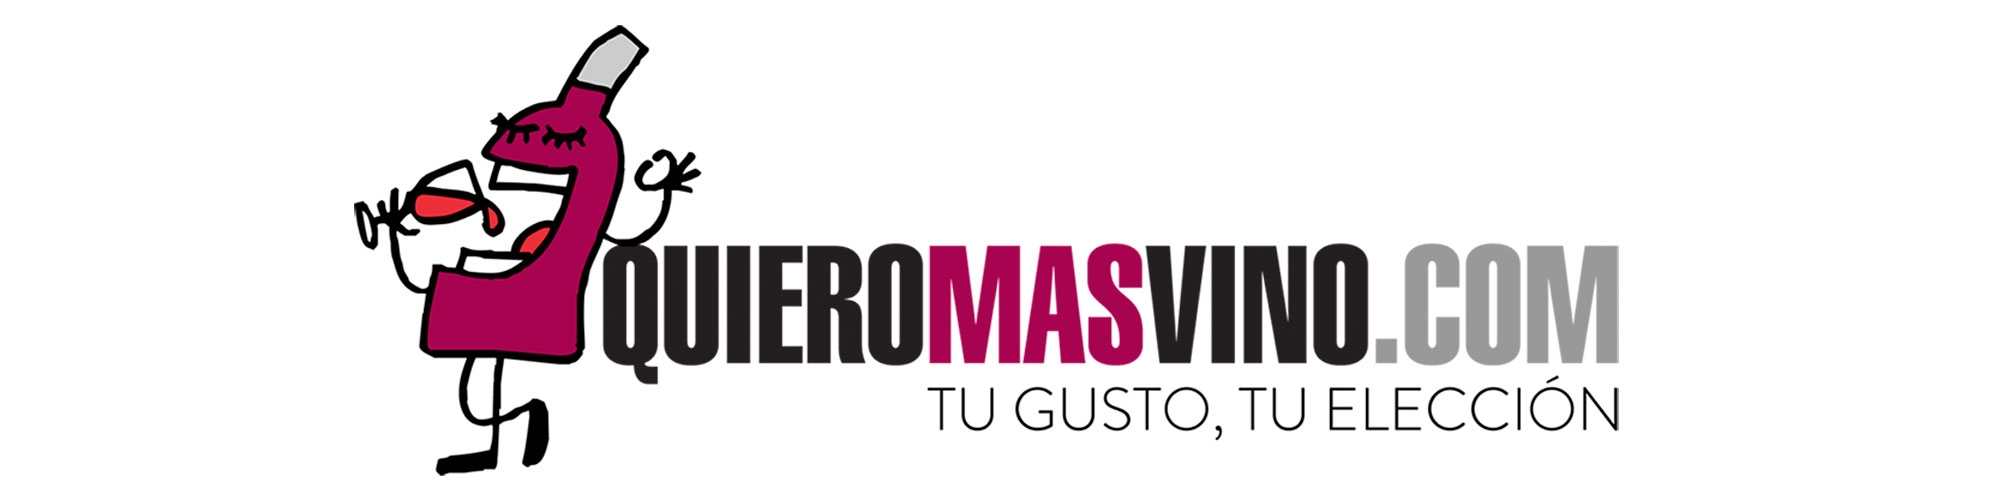 Bienvenid@s a QUIEROMASVINO.COM…